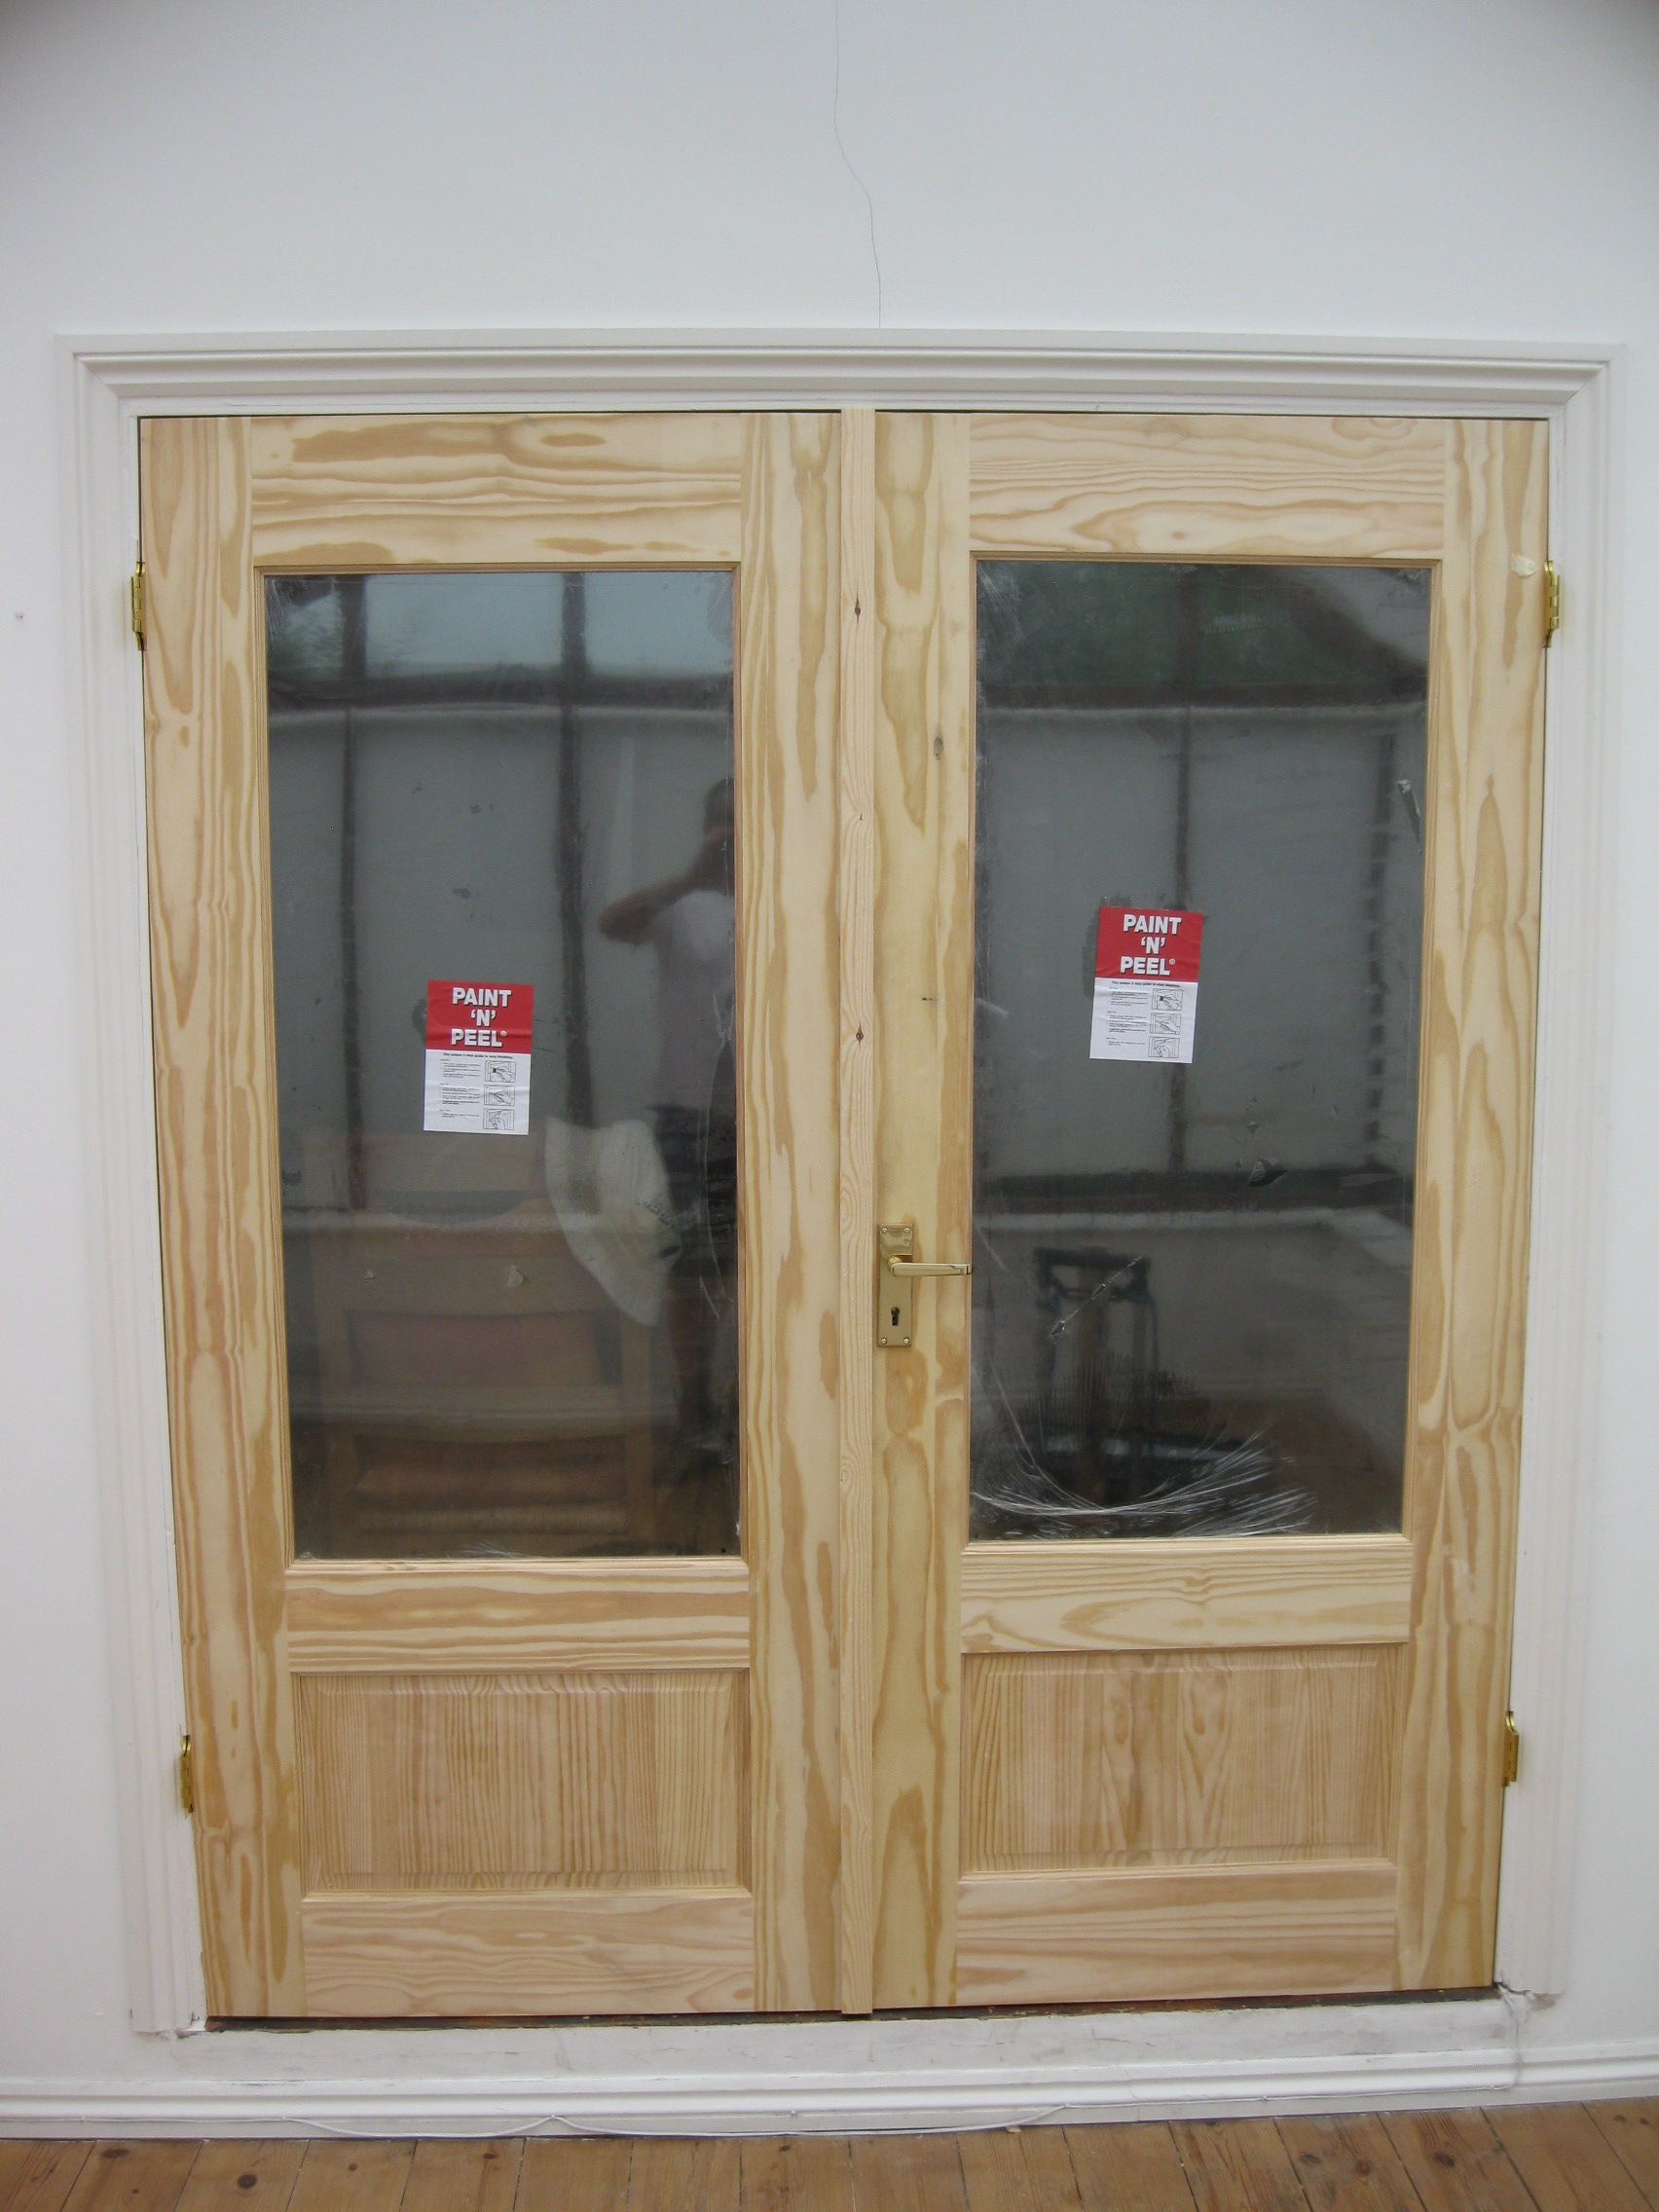 Wooden french doors